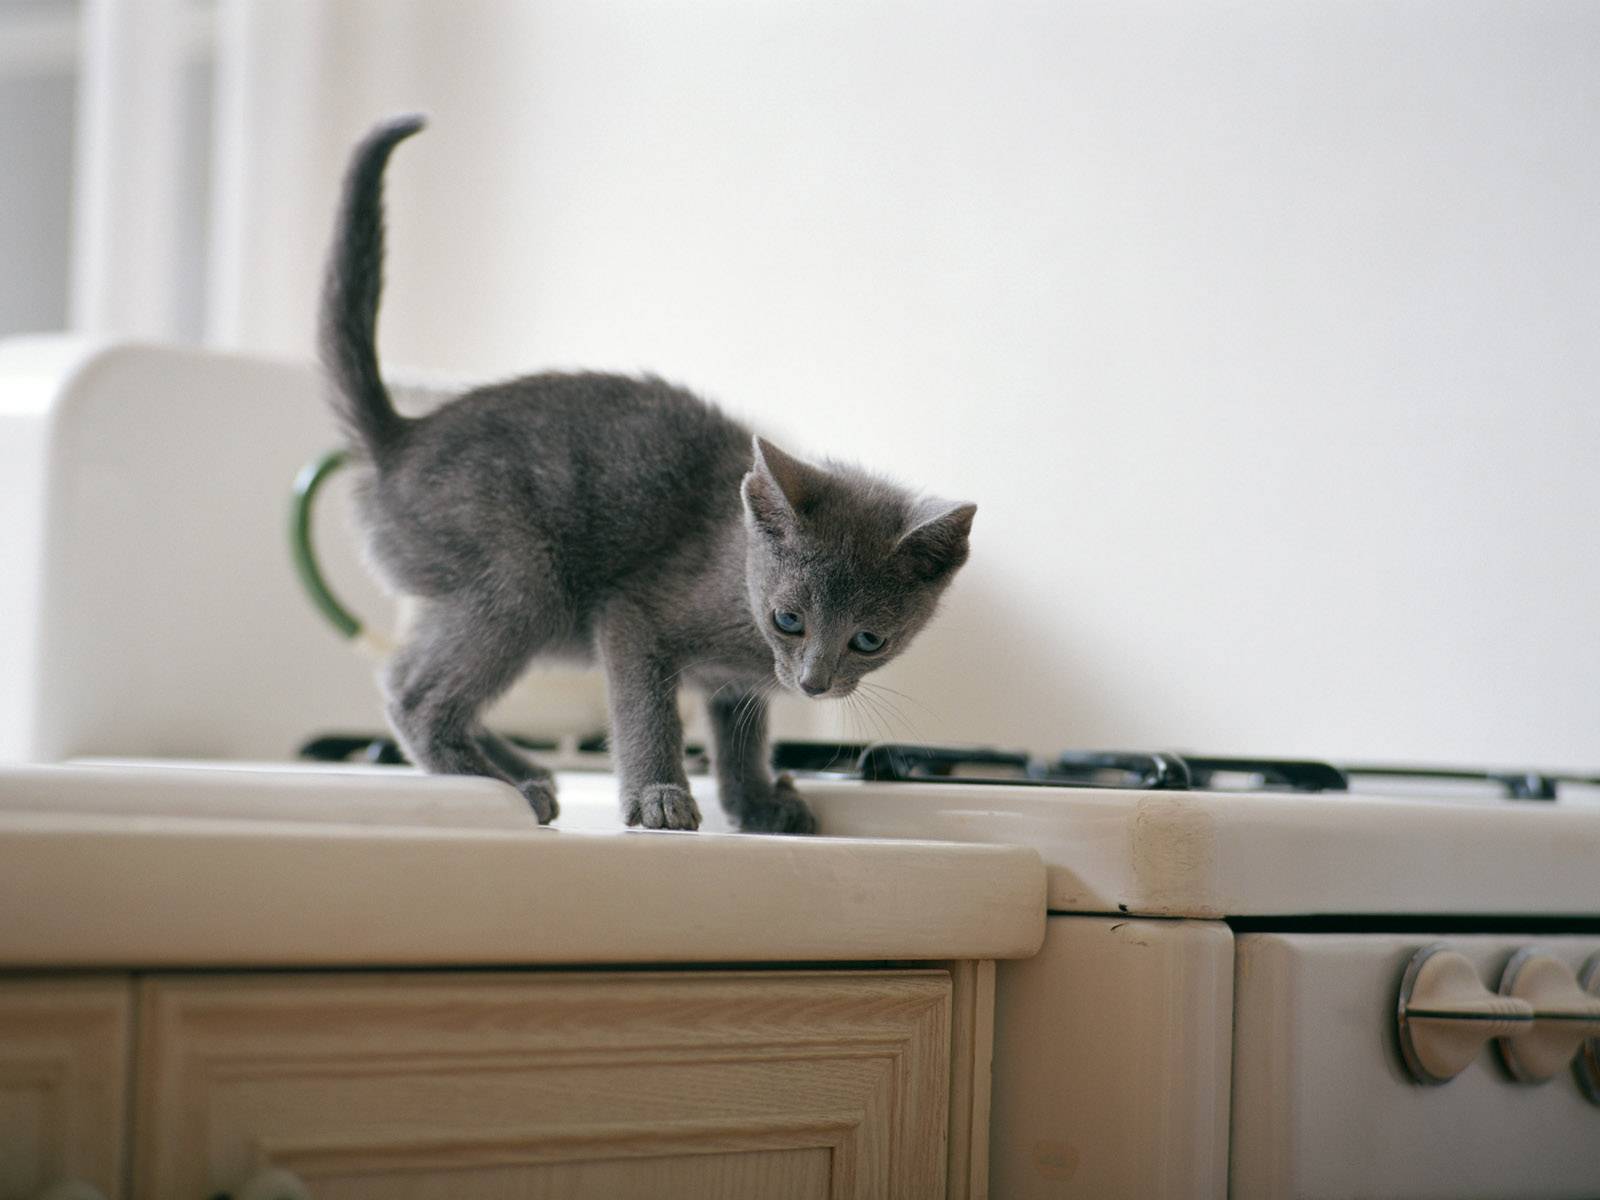 Как отучить котёнка прыгать и лазить по столам — видео, как отучить кота ходить по столу или сидеть на столе, как скотчем отучить кошку воровать еду со стола